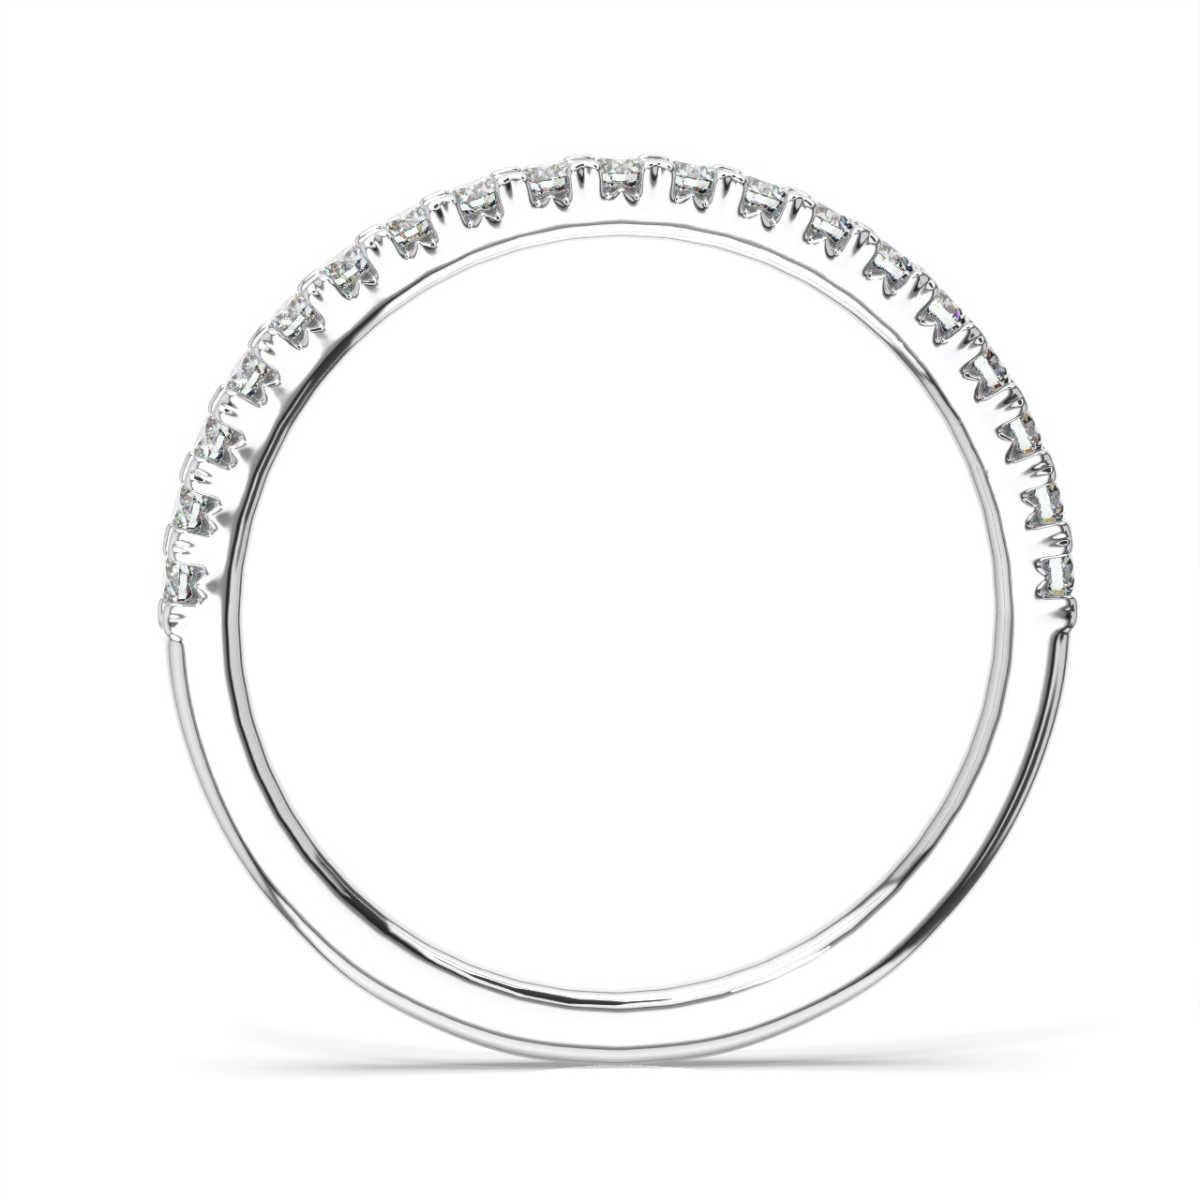 Dieser atemberaubende Ring ist mit französischen Pave-Diamanten besetzt, einer Art der Fassung, die es dem Licht ermöglicht, unsere perfekt aufeinander abgestimmten Diamanten aus vielen Winkeln zu erreichen. Er funkelt wie kein anderer